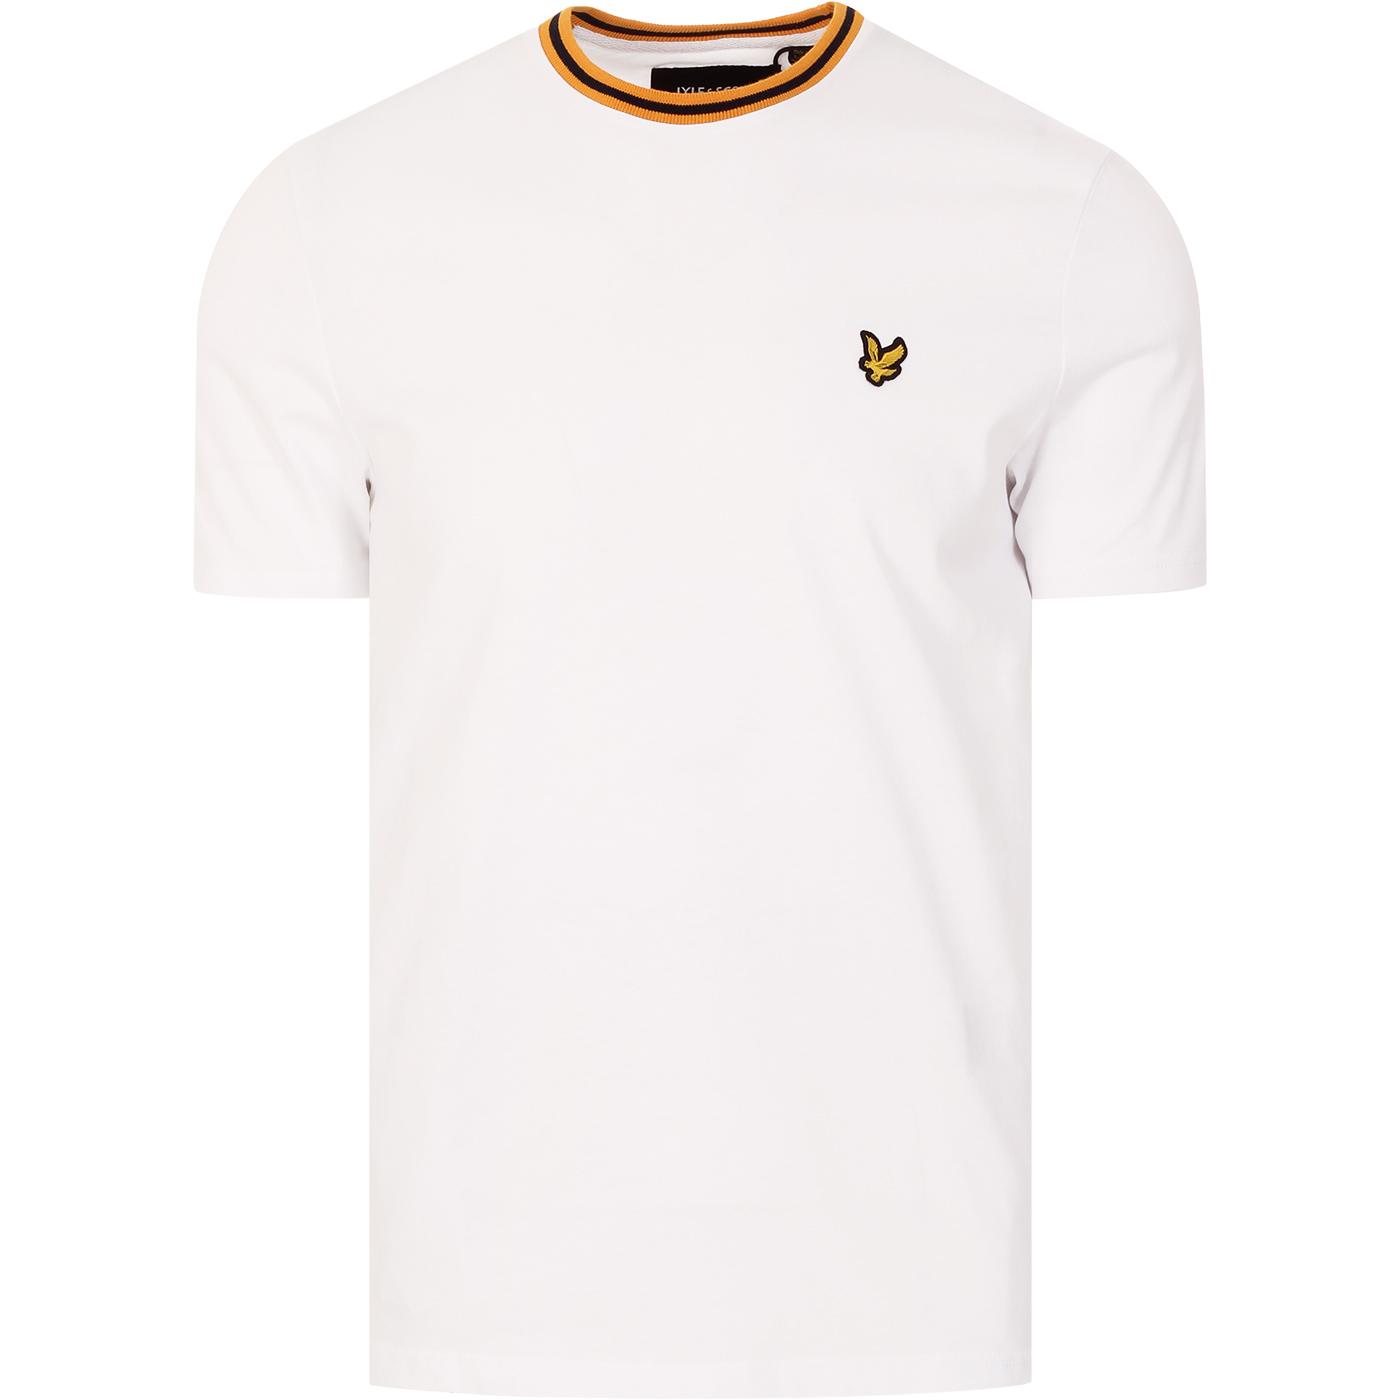 LYLE & SCOTT Retro Mod Tipped Ringer T-shirt in White